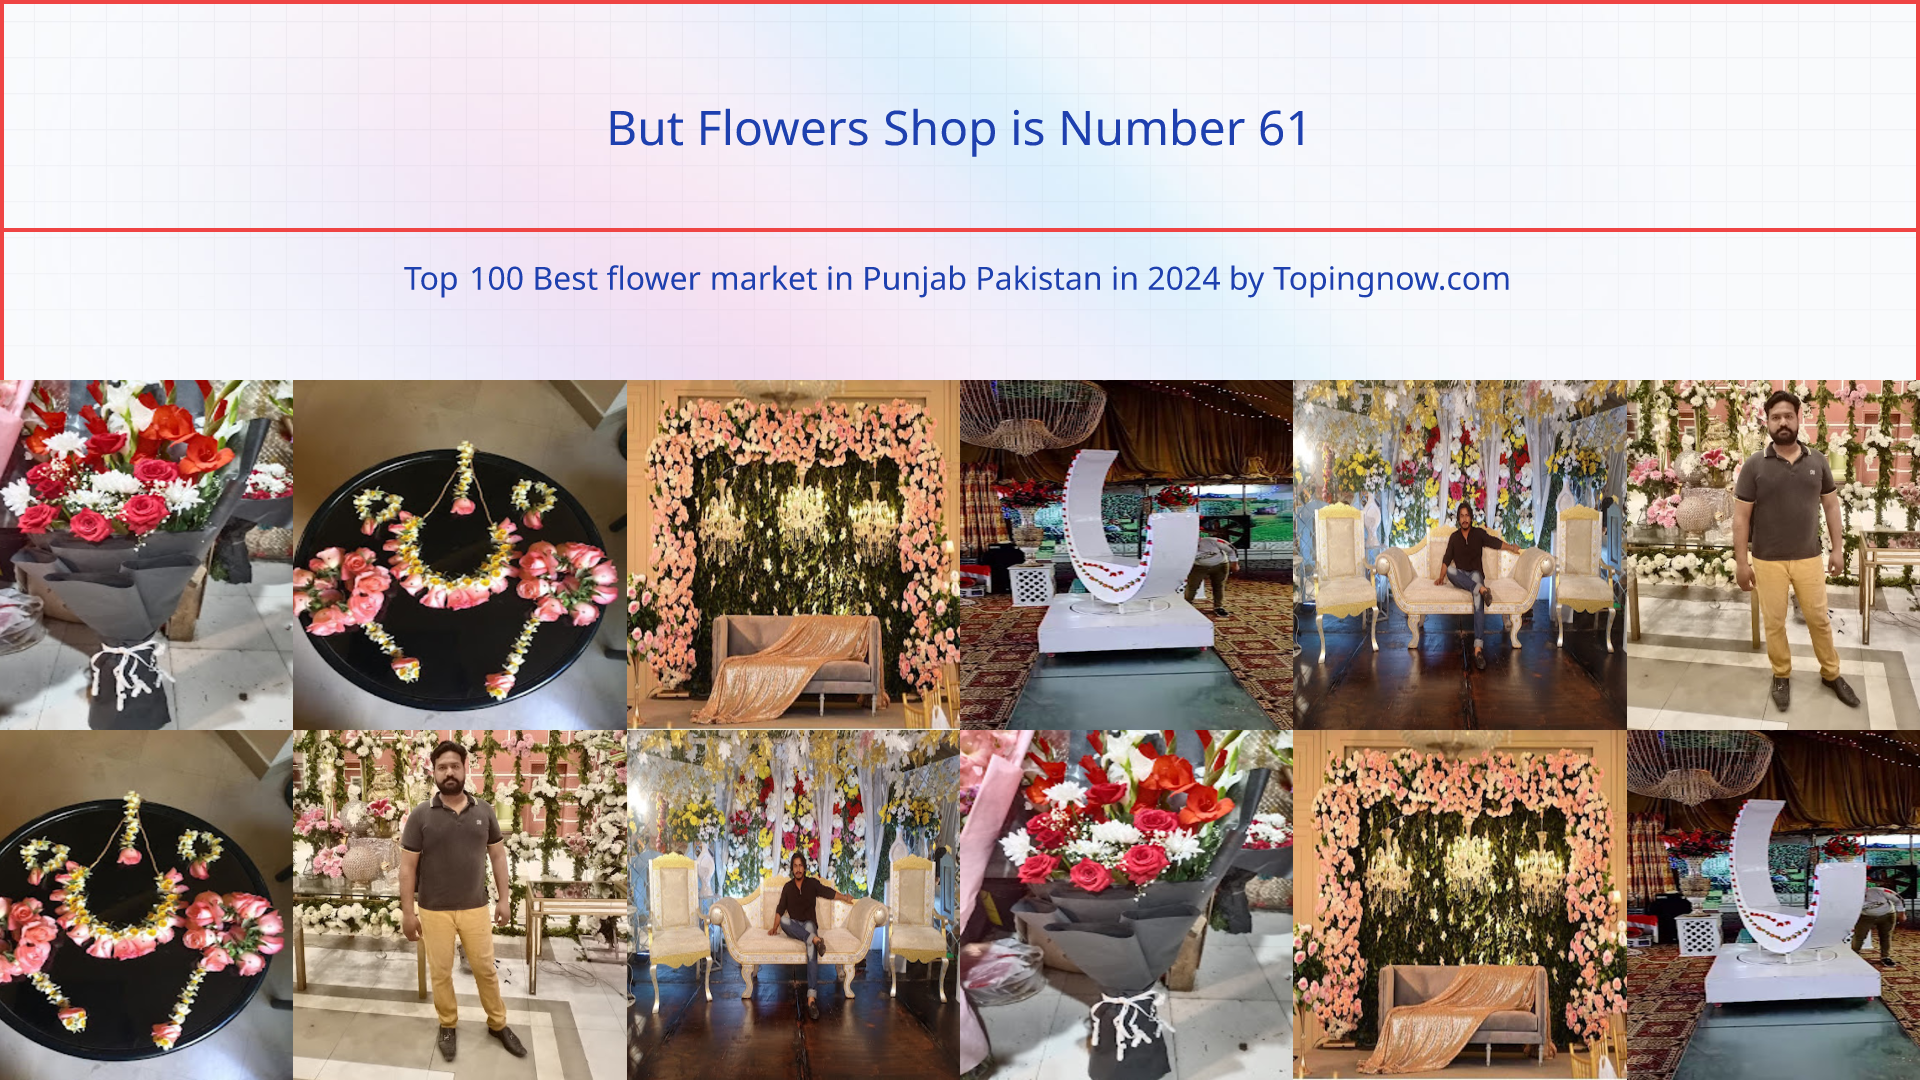 But Flowers Shop: Top 100 Best flower market in Punjab Pakistan in 2024